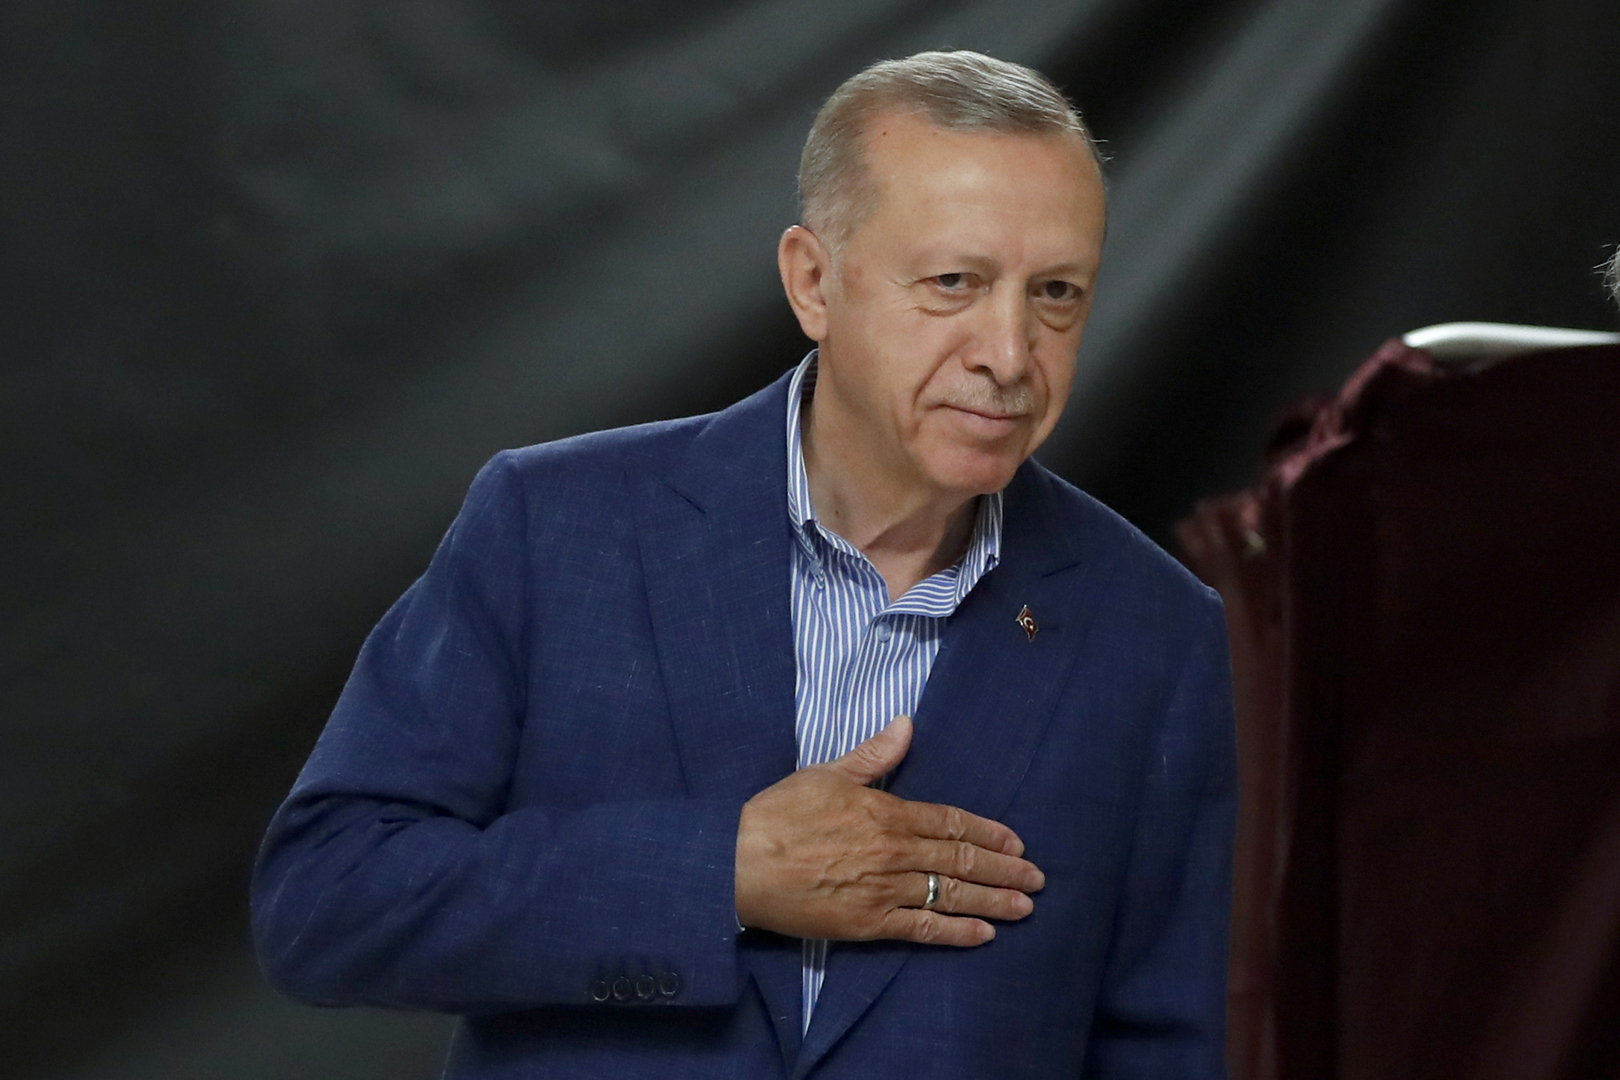 كيليتشدار أوغلو في خطاب بعد هزيمته أمام أردوغان: أشعر بالحزن لأن هناك صعوبات تنتظر البلاد